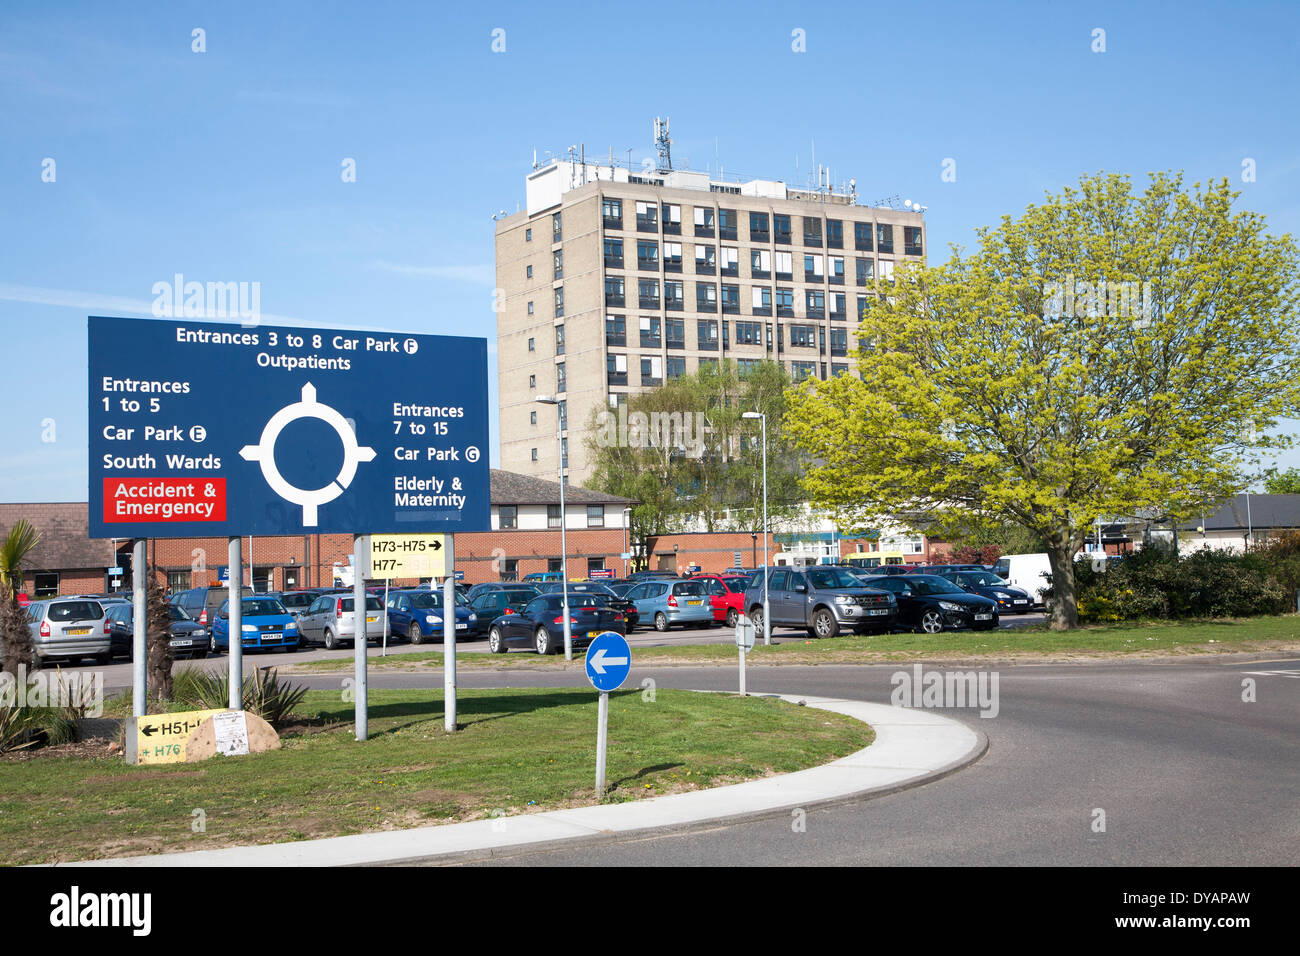 El signo de aparcamiento y la unidad de maternidad del Hospital Ipswich, NHS Trust, Ipswich, Suffolk, Inglaterra Foto de stock